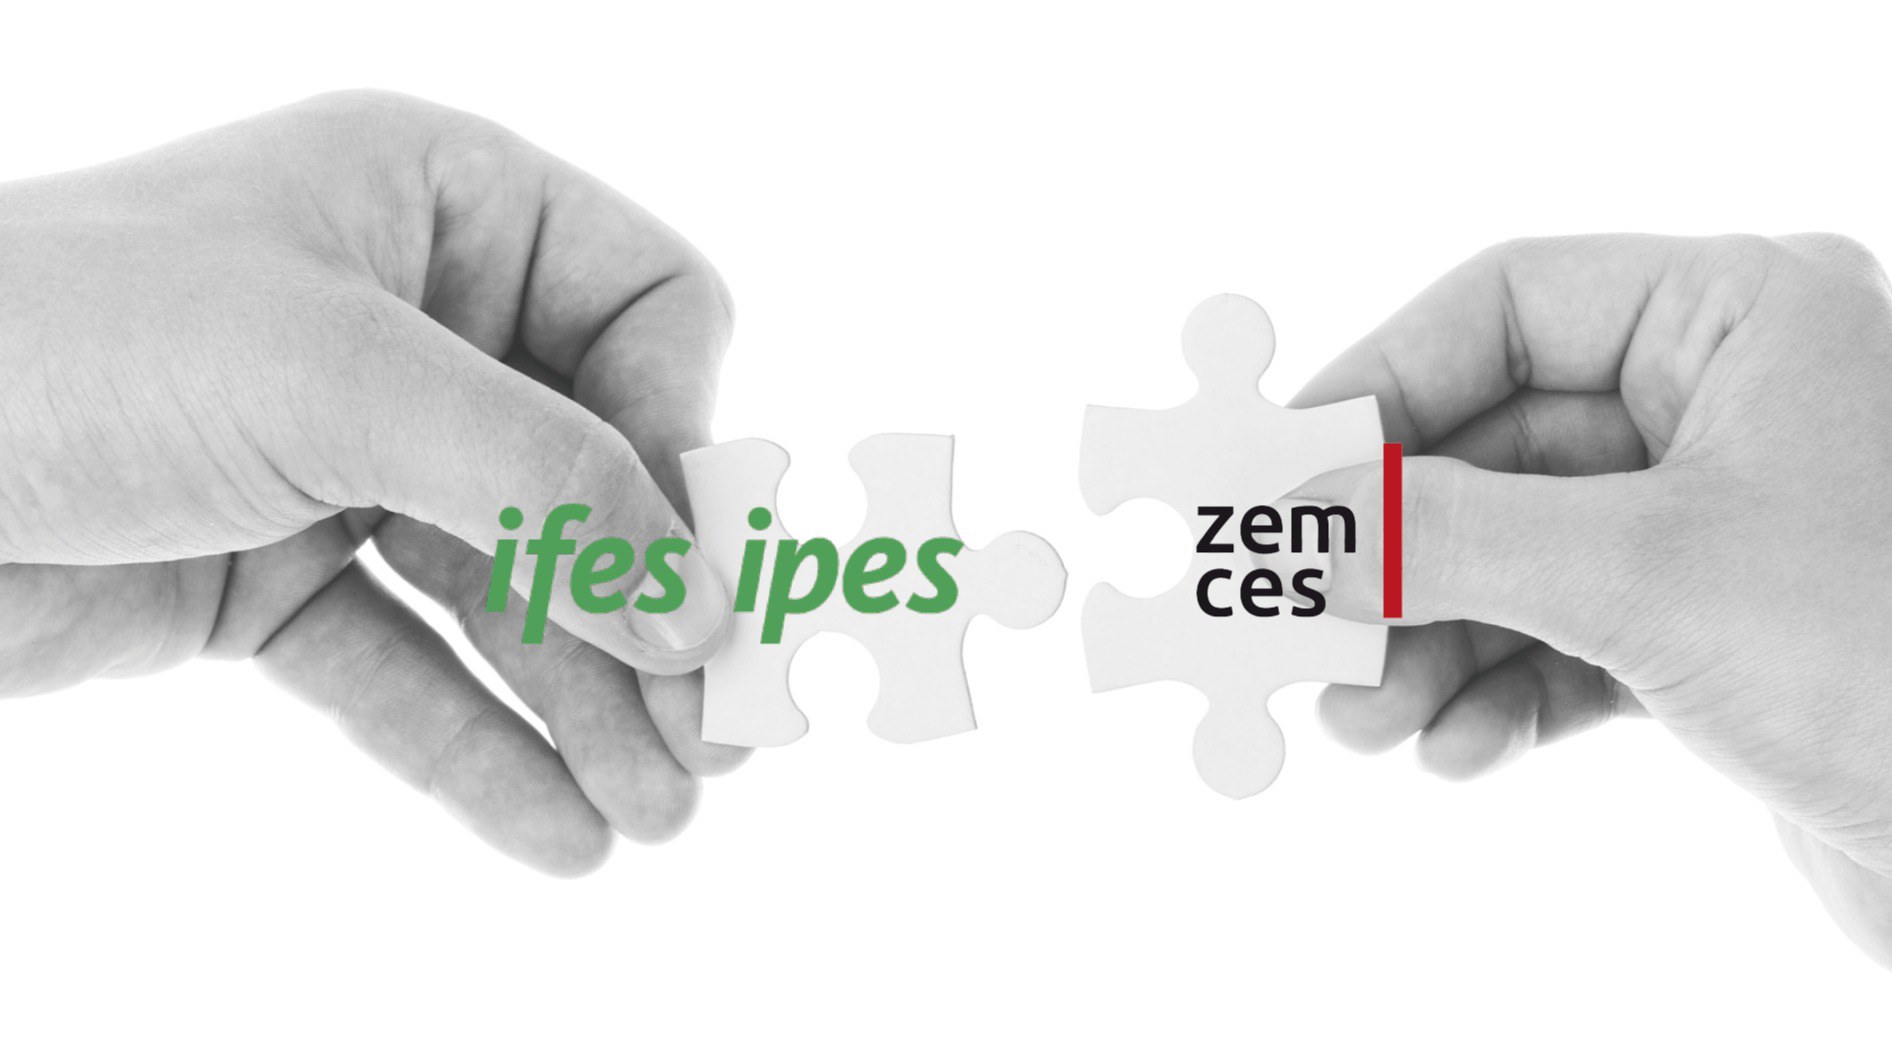 Zwei Hände, die je ein Puzzlestück ins Bild halten und diese zusammenfügen. Auf den Puzzlestücken steht ZEM CES und IFES IPES.